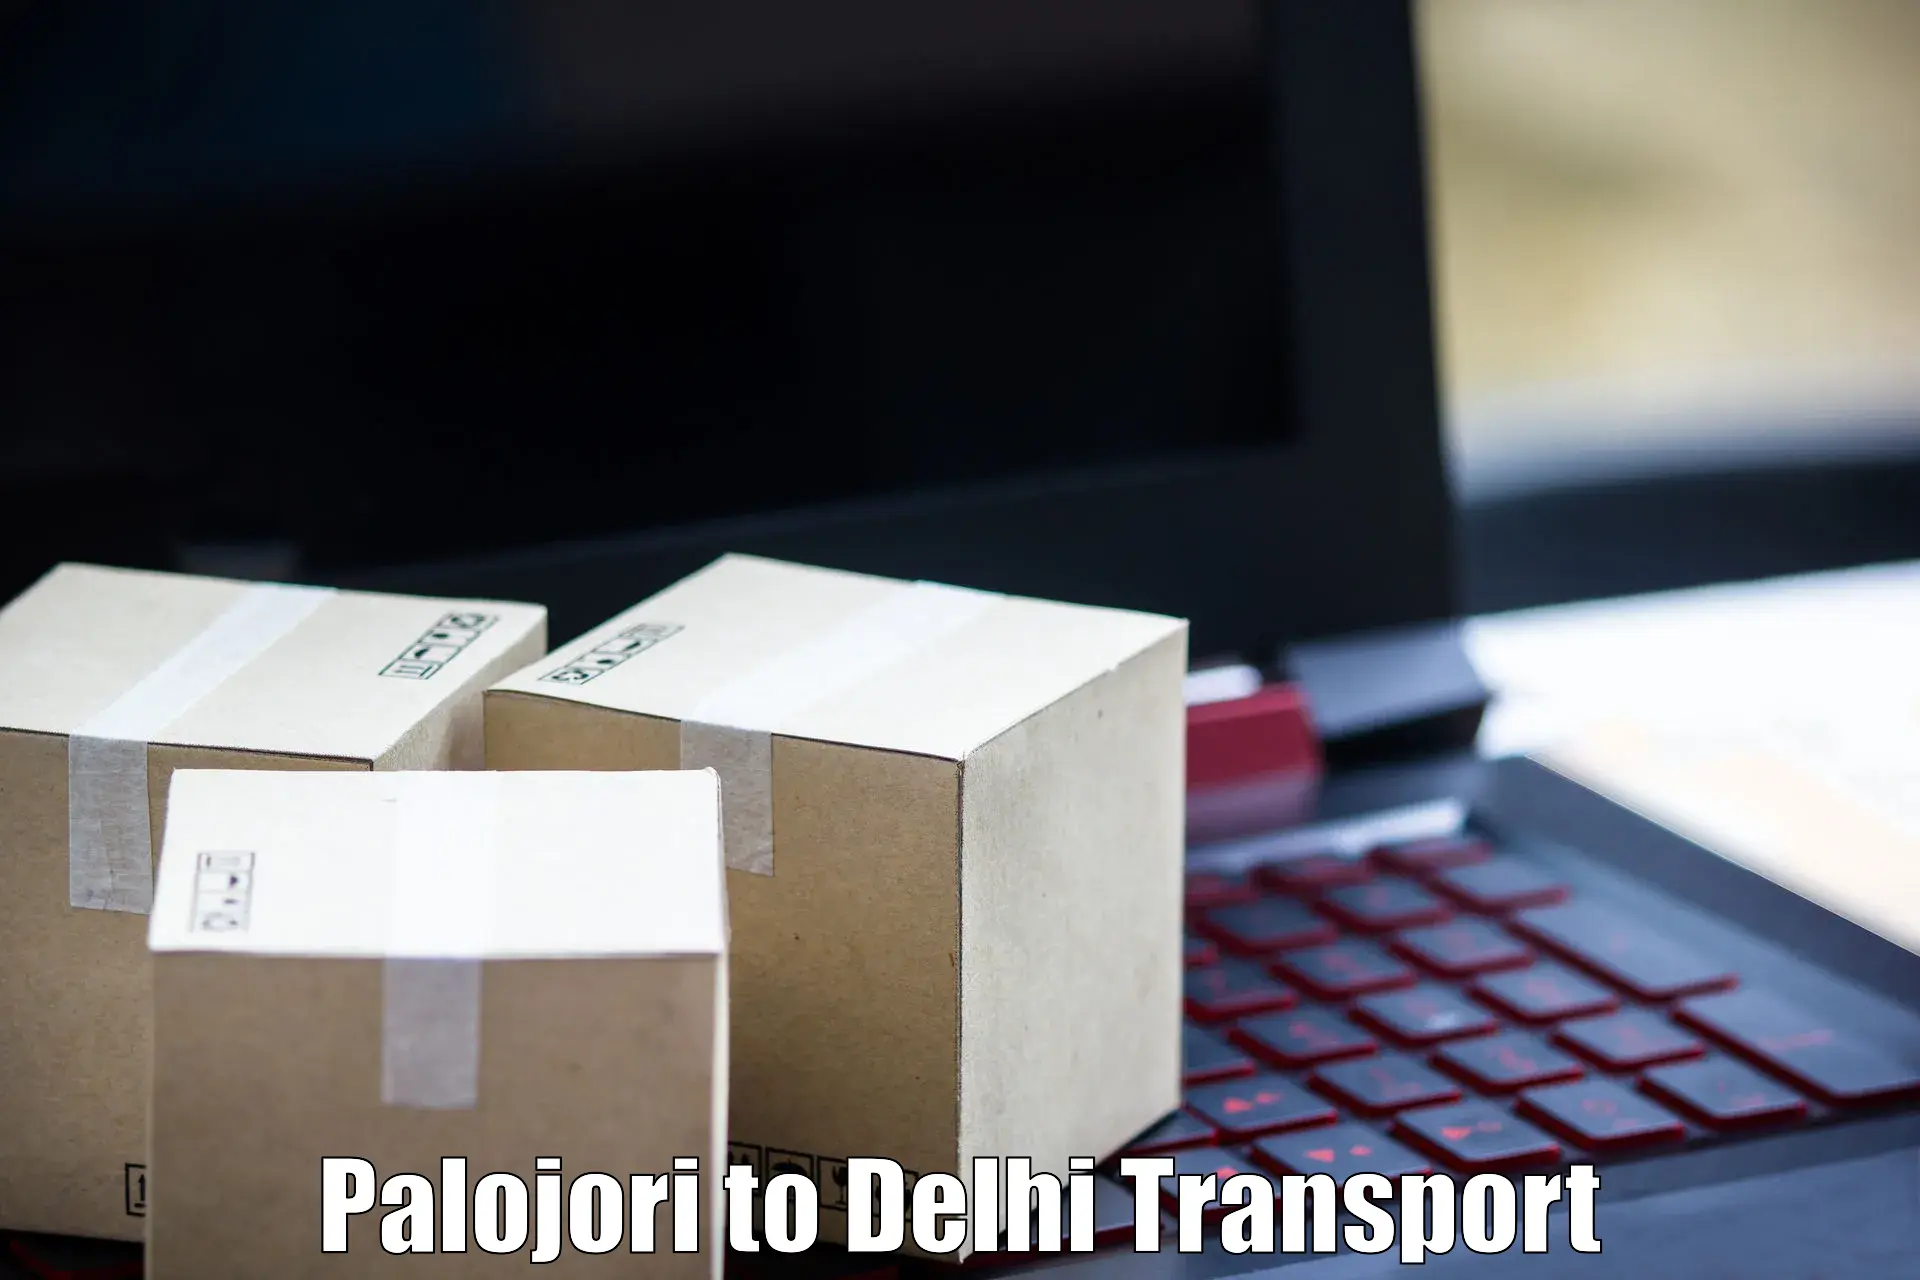 Transport shared services Palojori to Ashok Vihar